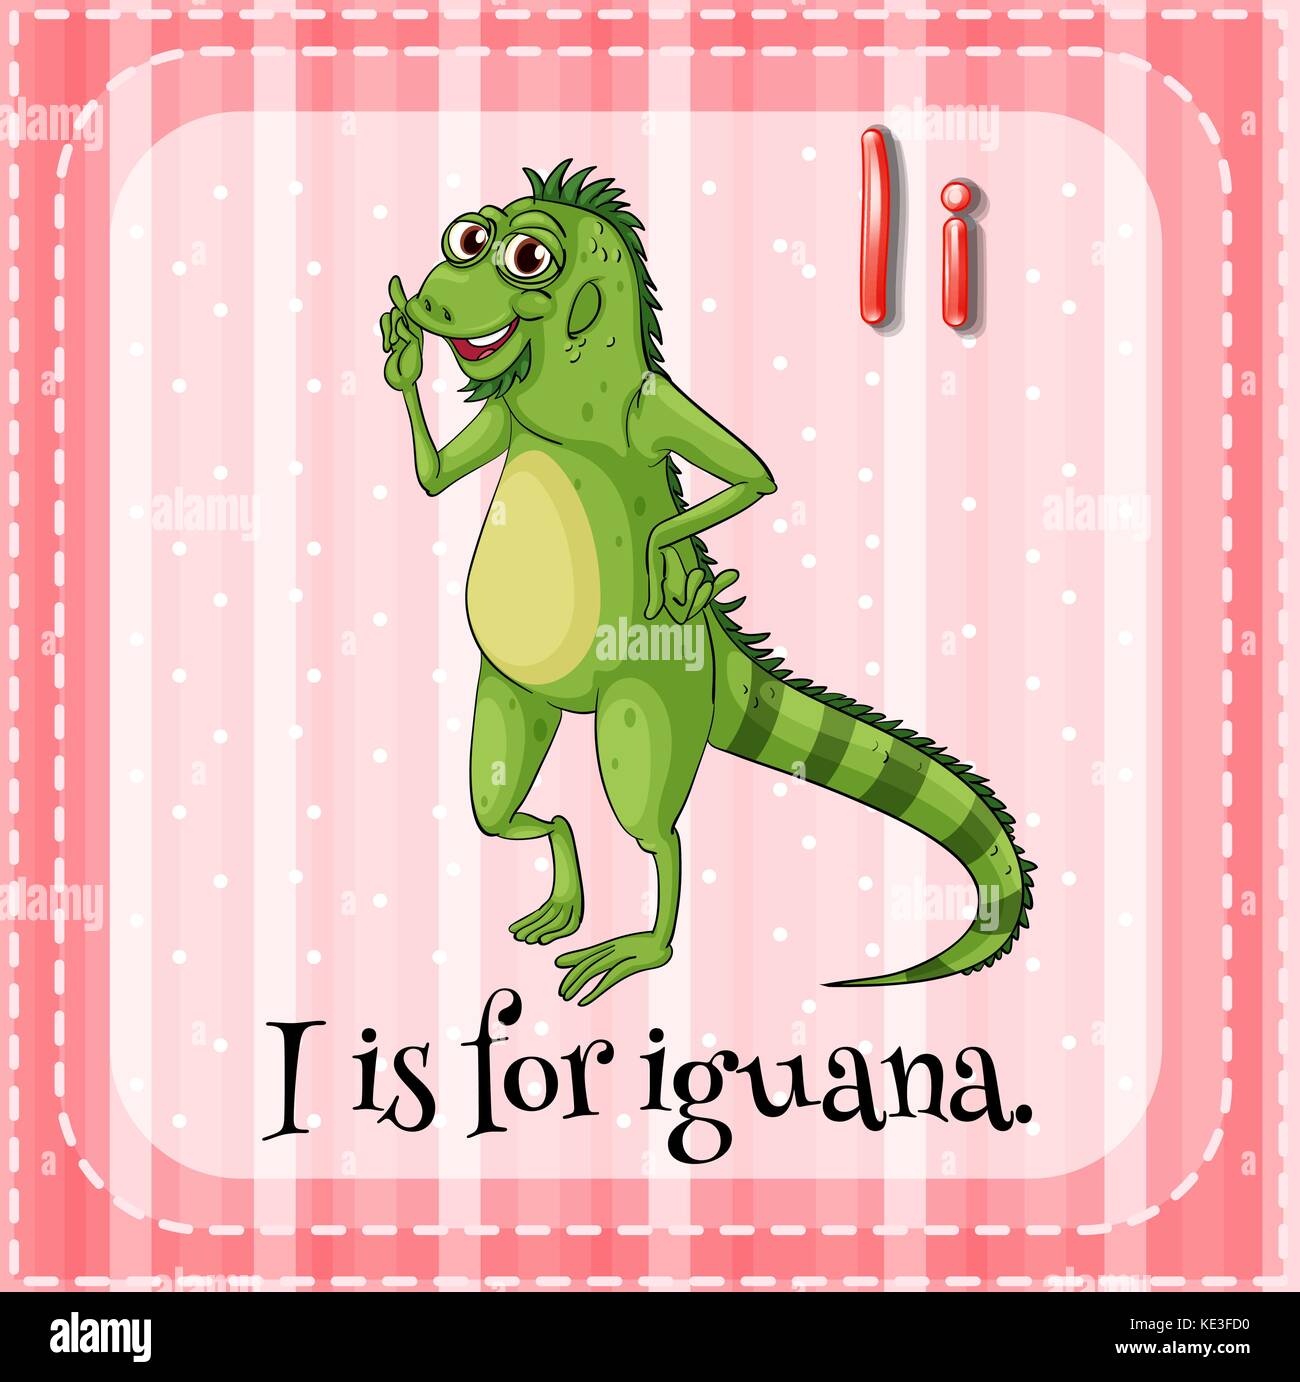 Letter I is for iguana illustration Stock Vector